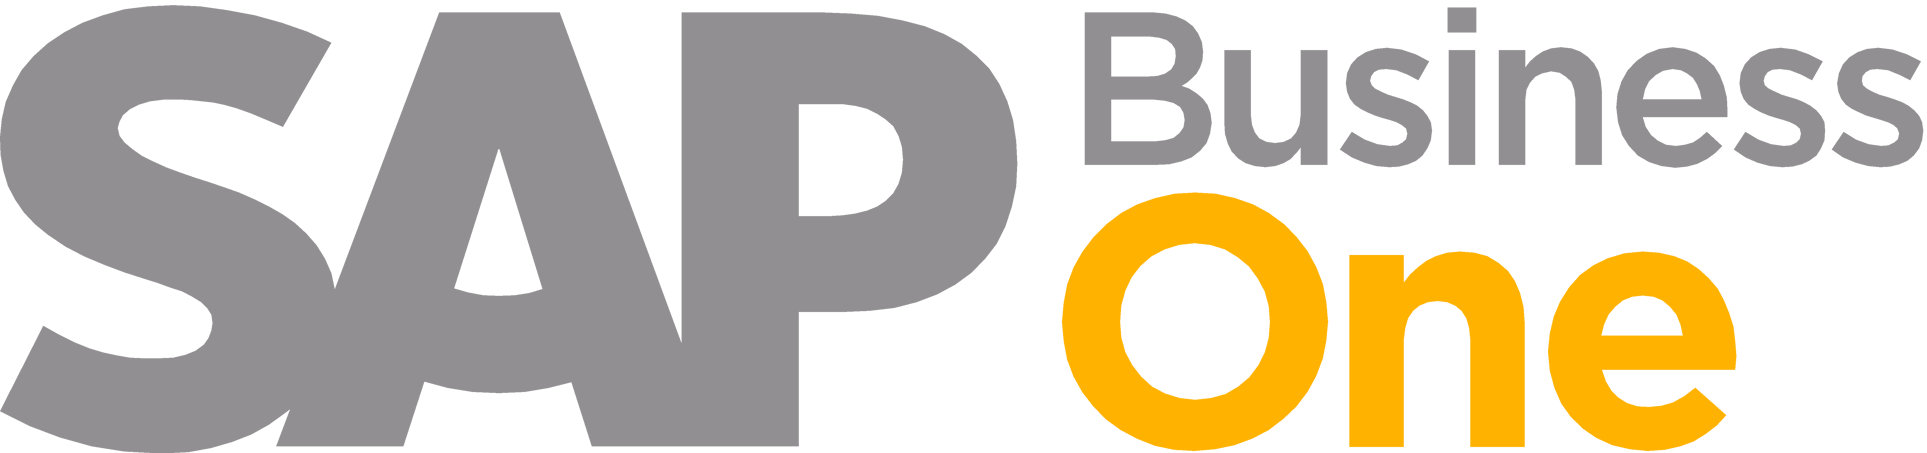 Sap-B1-Logo-png